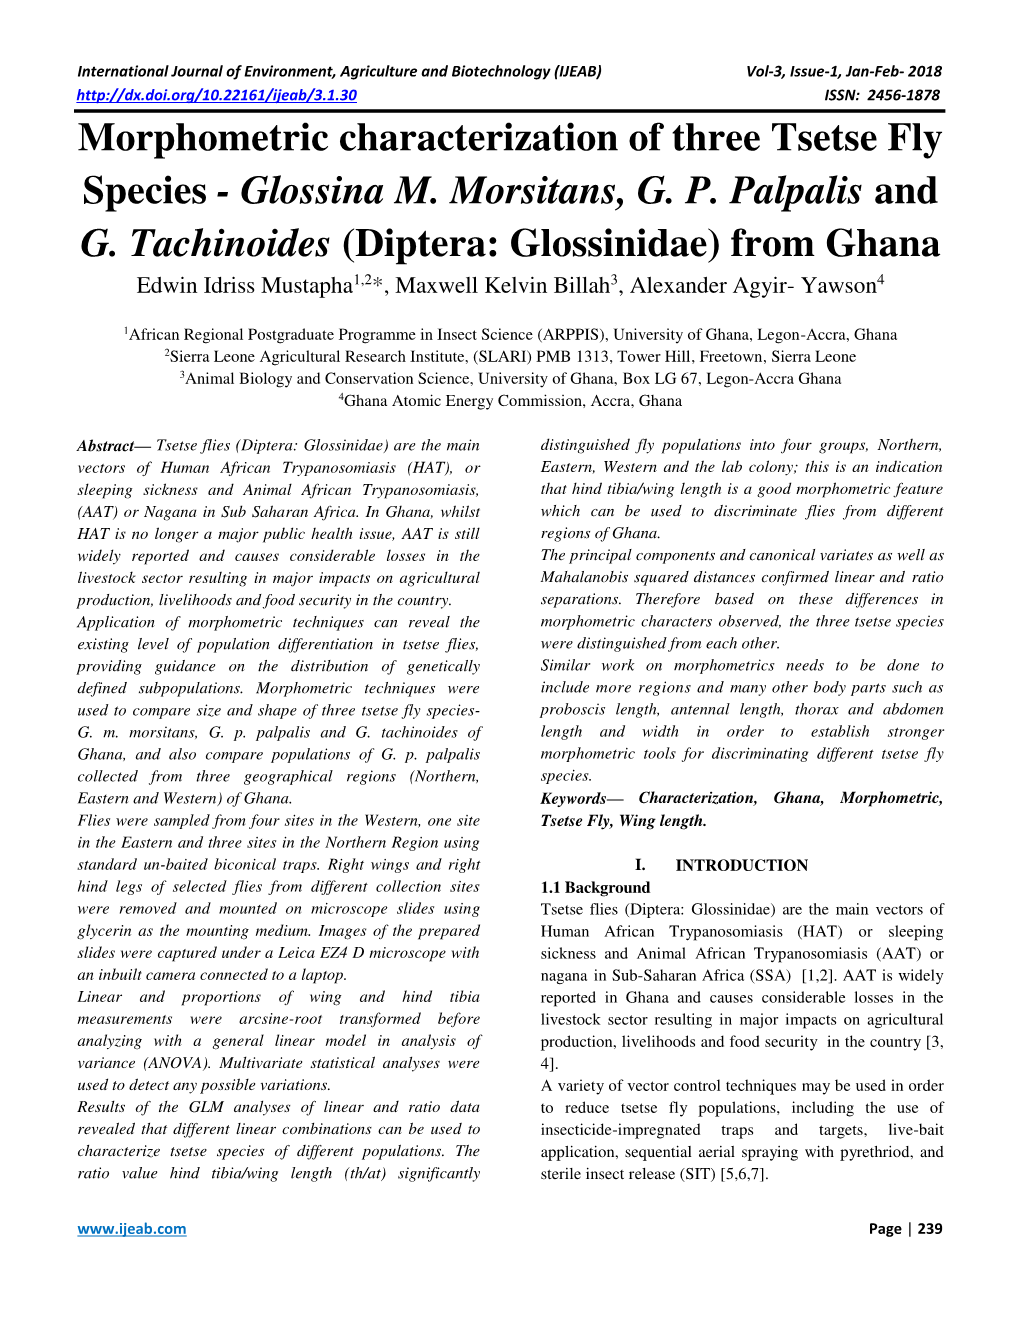 Morphometric Characterization of Three Tsetse Fly Species - Glossina M